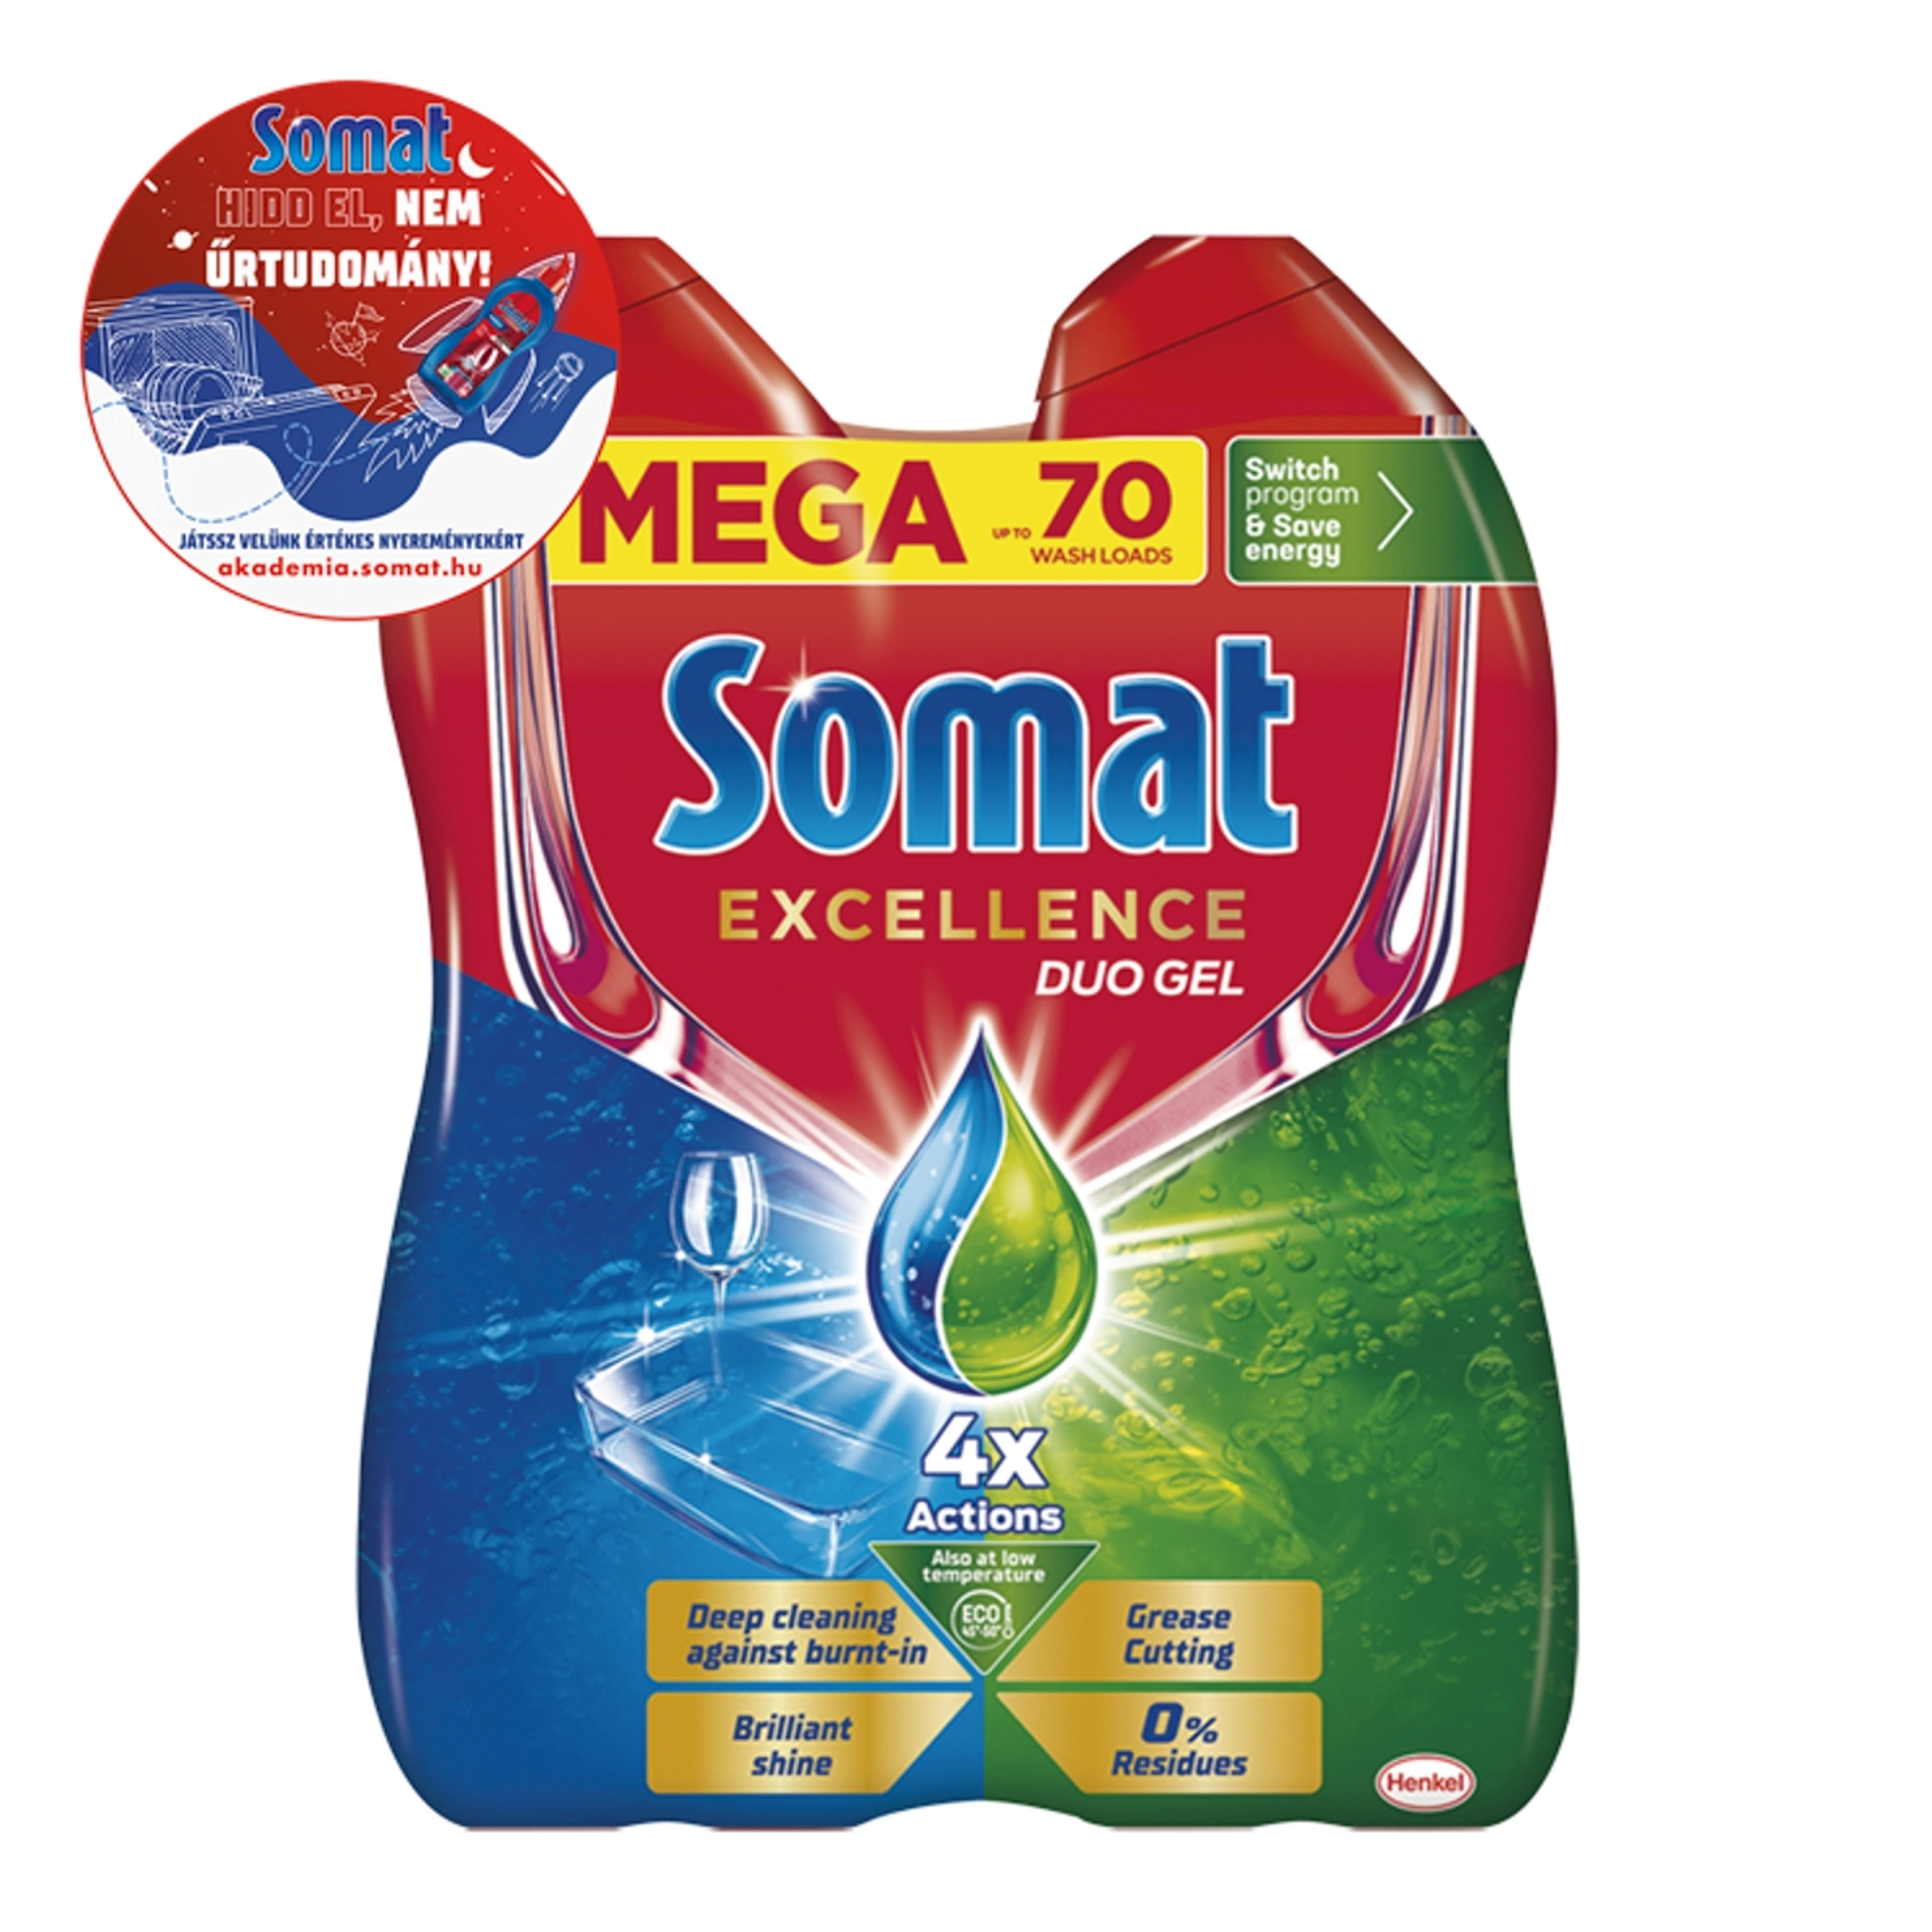 Somat Excellence Duo Gel gépi mosogatószer gél 70 mosogatás 2 x 630 ml - 1260 ml